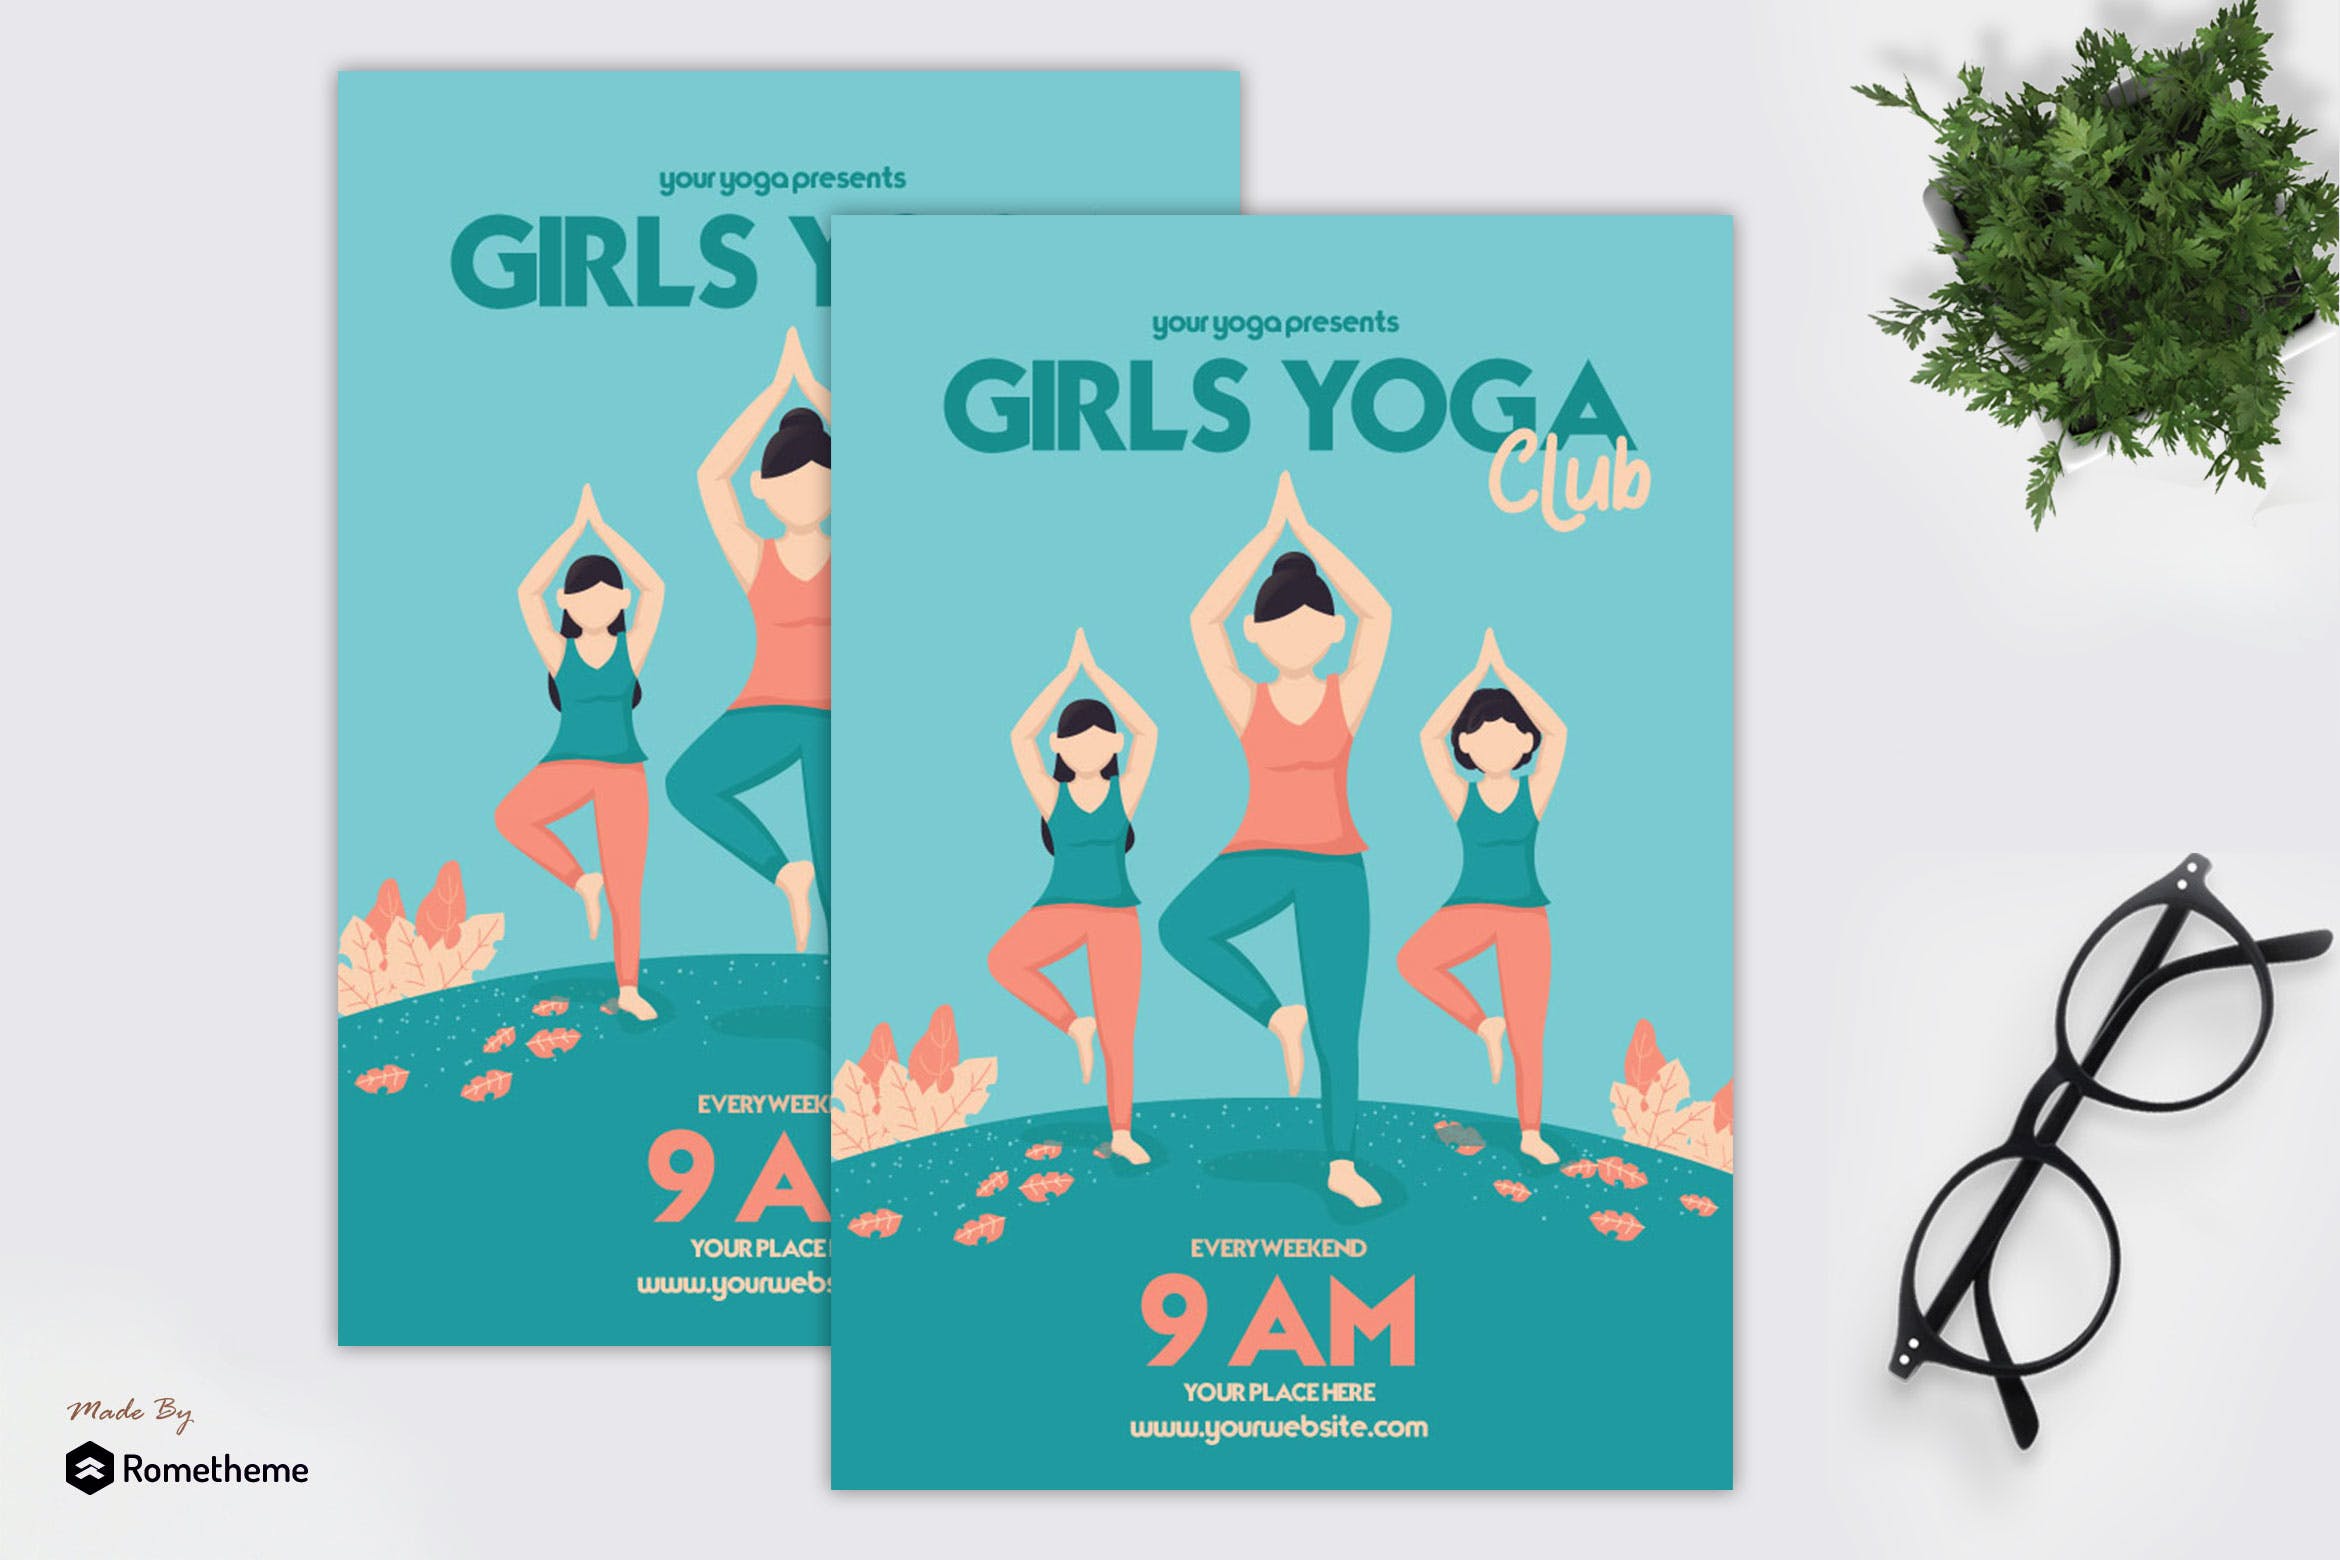 女神瑜伽俱乐部宣传单海报PSD素材第一素材精选模板 Girls Yoga Club – Flyer GR插图